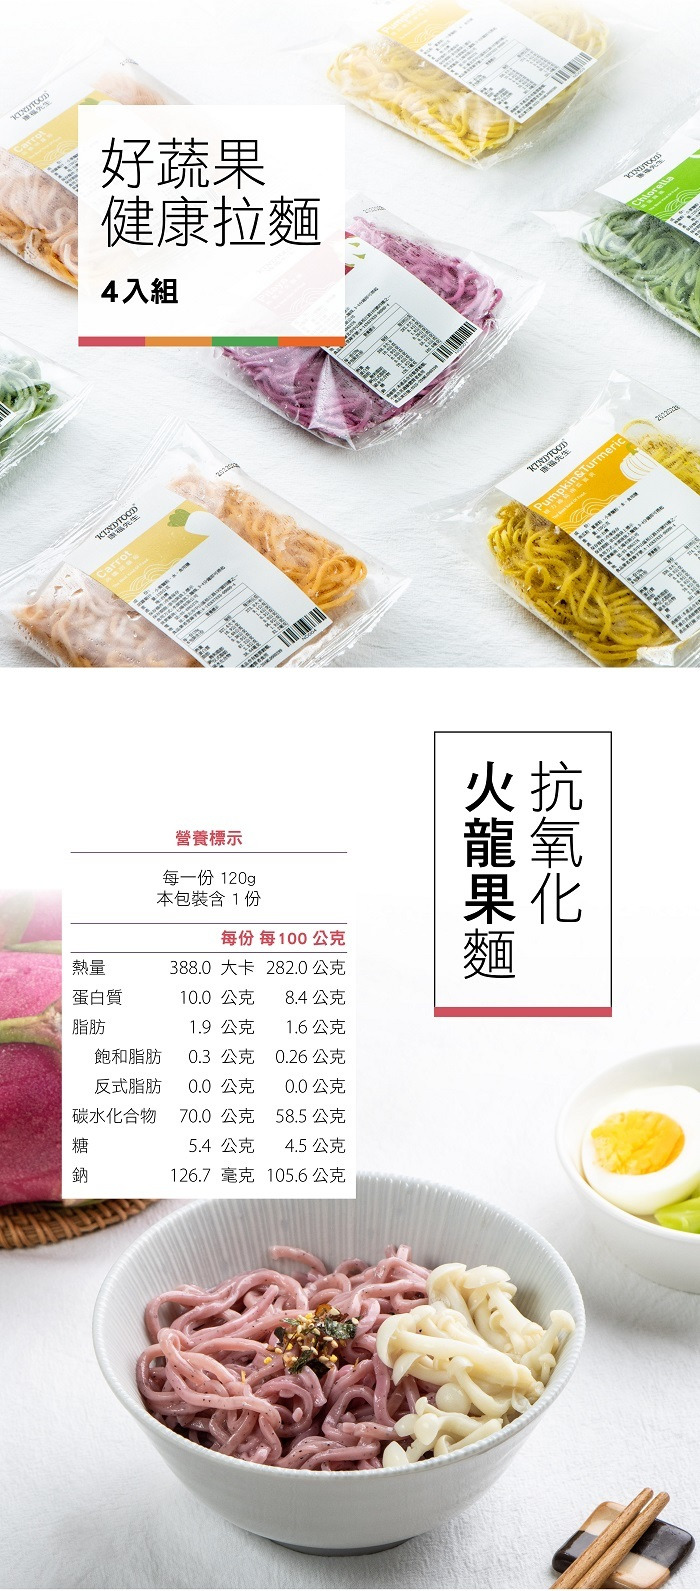 使用通過SQF國際認證的高品質麵粉製作，麵體Q彈有勁，並選用台灣在地食材，幫麵條加上美麗色彩，無添加防腐劑、人工色素和調味料，只有最真實的美味。